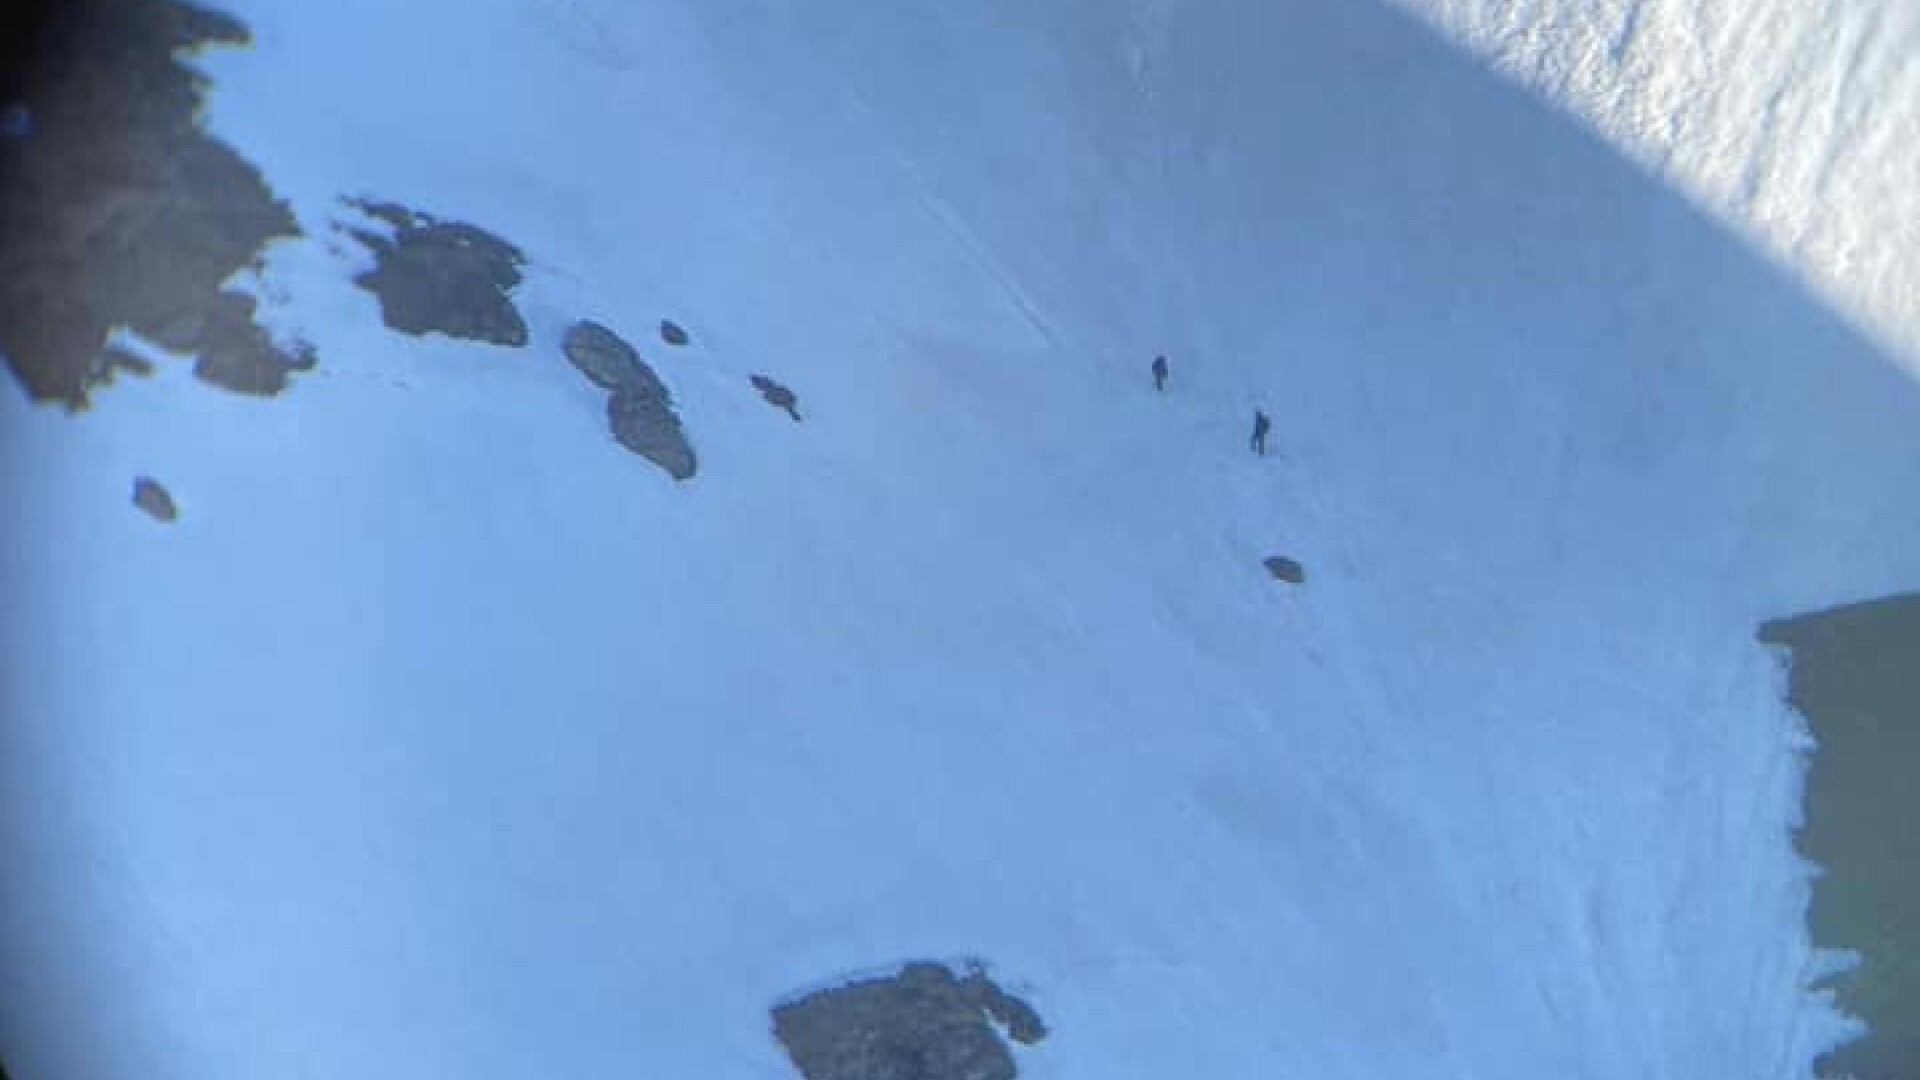 Intervenții contracronometru ale salvamontiștilor pentru turiști blocați în zăpada din Bucegi. Printre victime, un copil